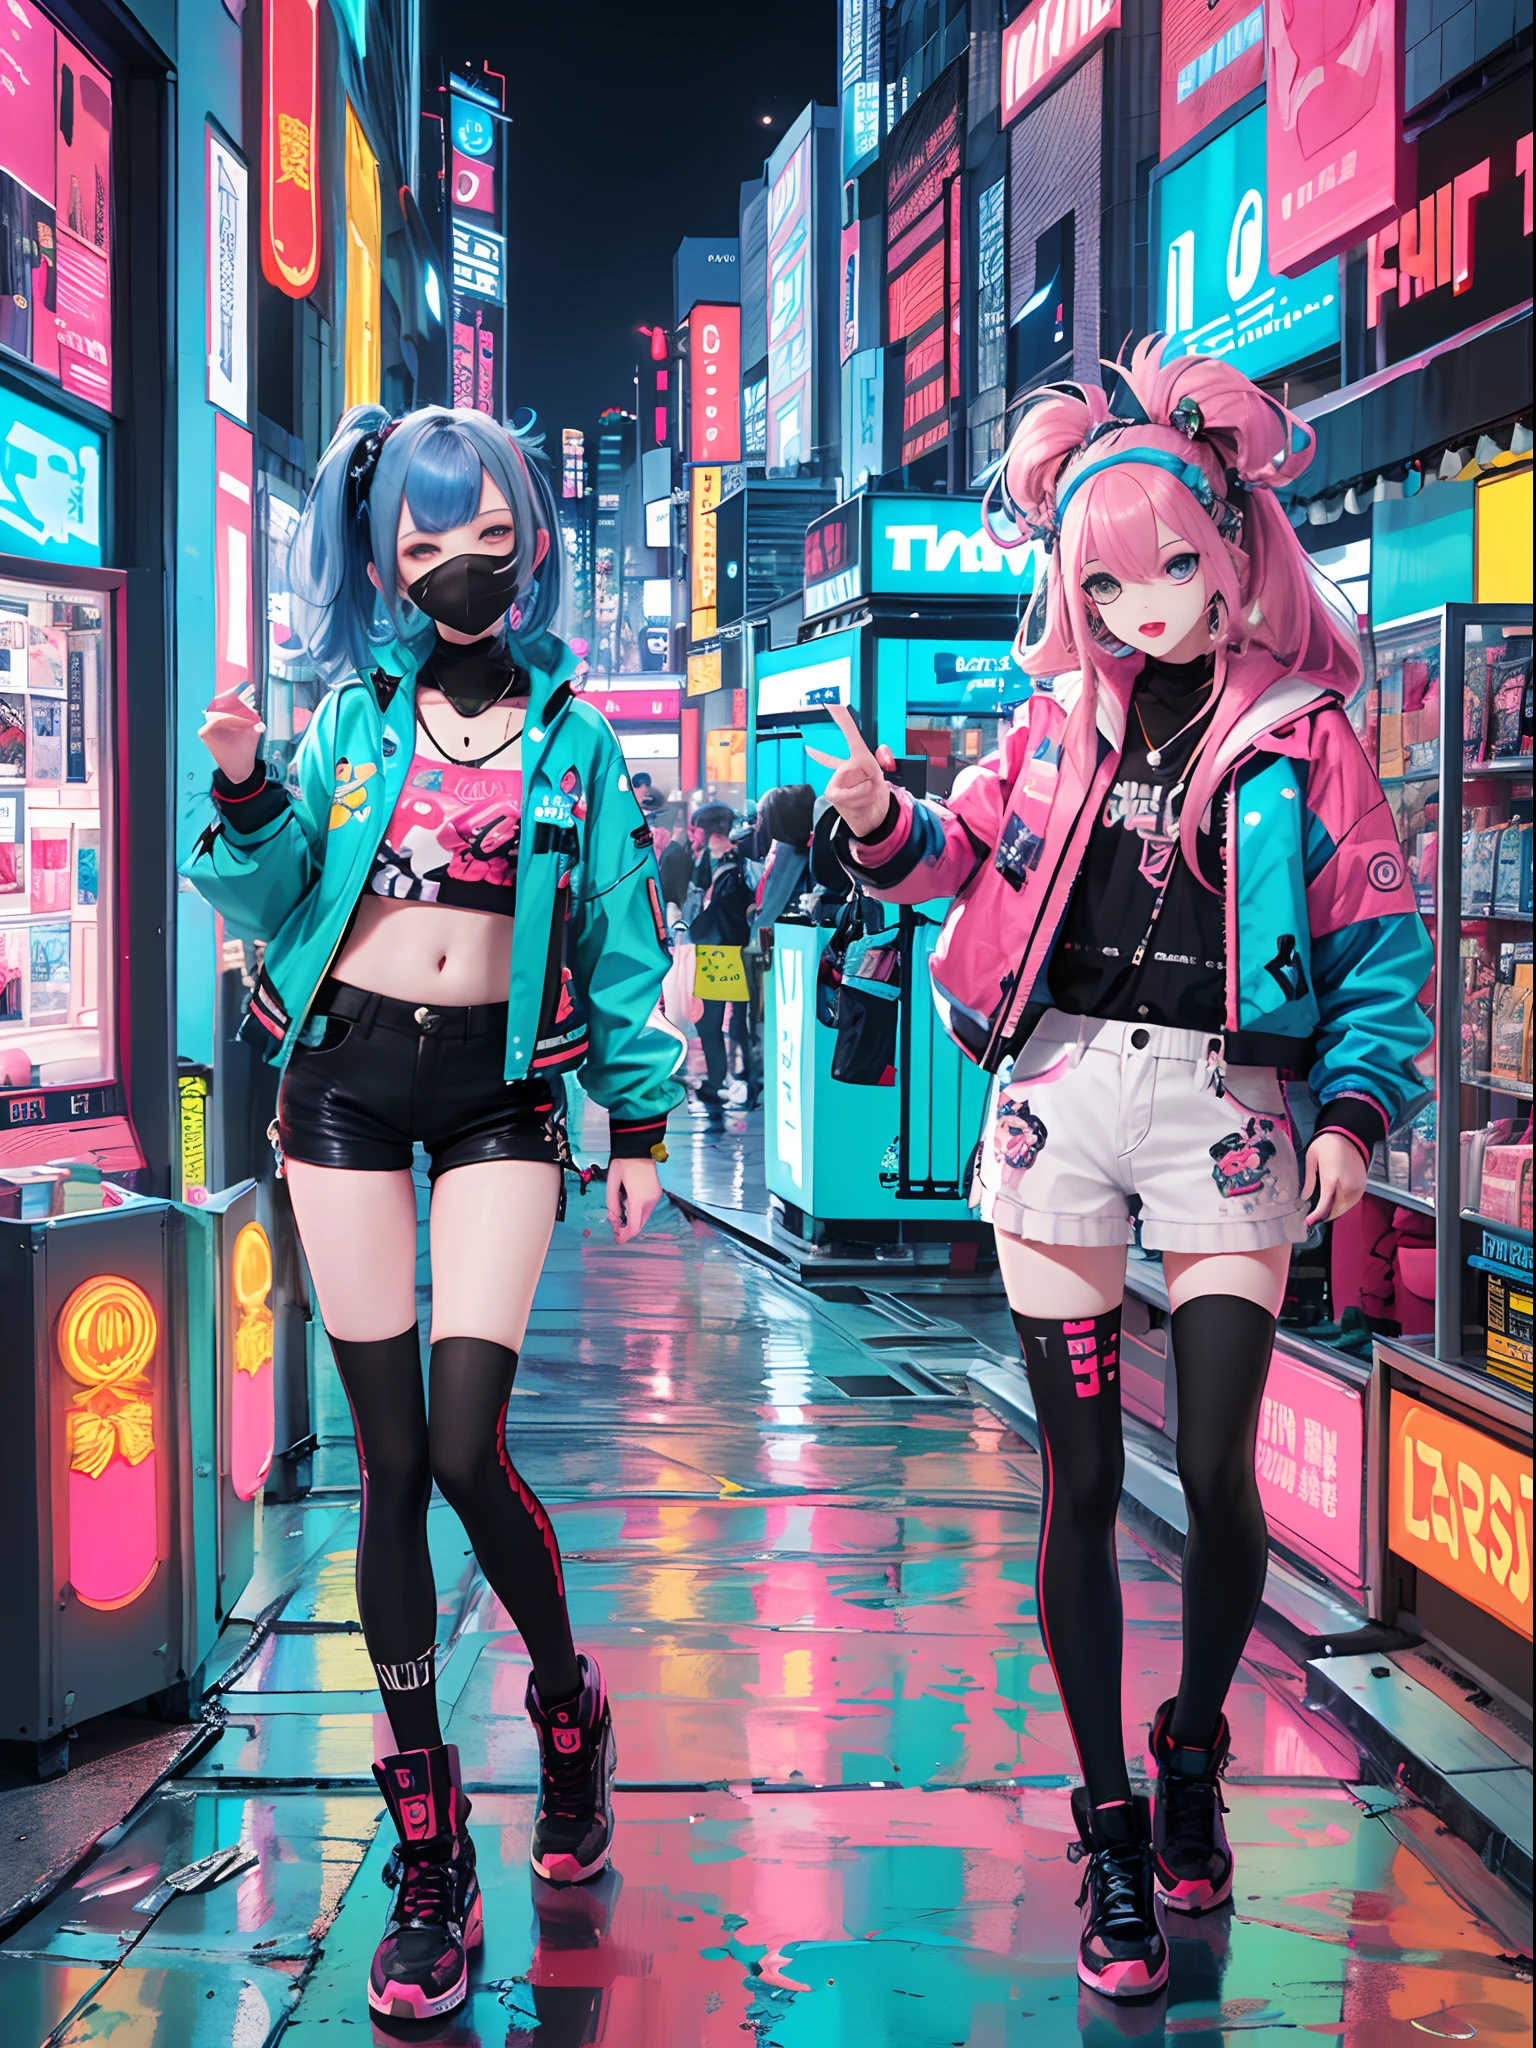 An animé illustration of 2 girls, filles cyberpunk confiantes avec une expression impertinente, ((Tenue pop et veste tech inspirées de Harajuku)), couleurs et motifs audacieux, des accessoires accrocheurs, coiffure tendance et innovante, maquillage vibrant, ((pose dynamique)), paysage urbain cyberpunk futuriste éblouissant, grattes ciels, enseignes au néon, lumières LED lumineuses, palette de couleurs vives et vives, animé, illustration, (beau visage détaillé), détails complexes, ultra détaillé.